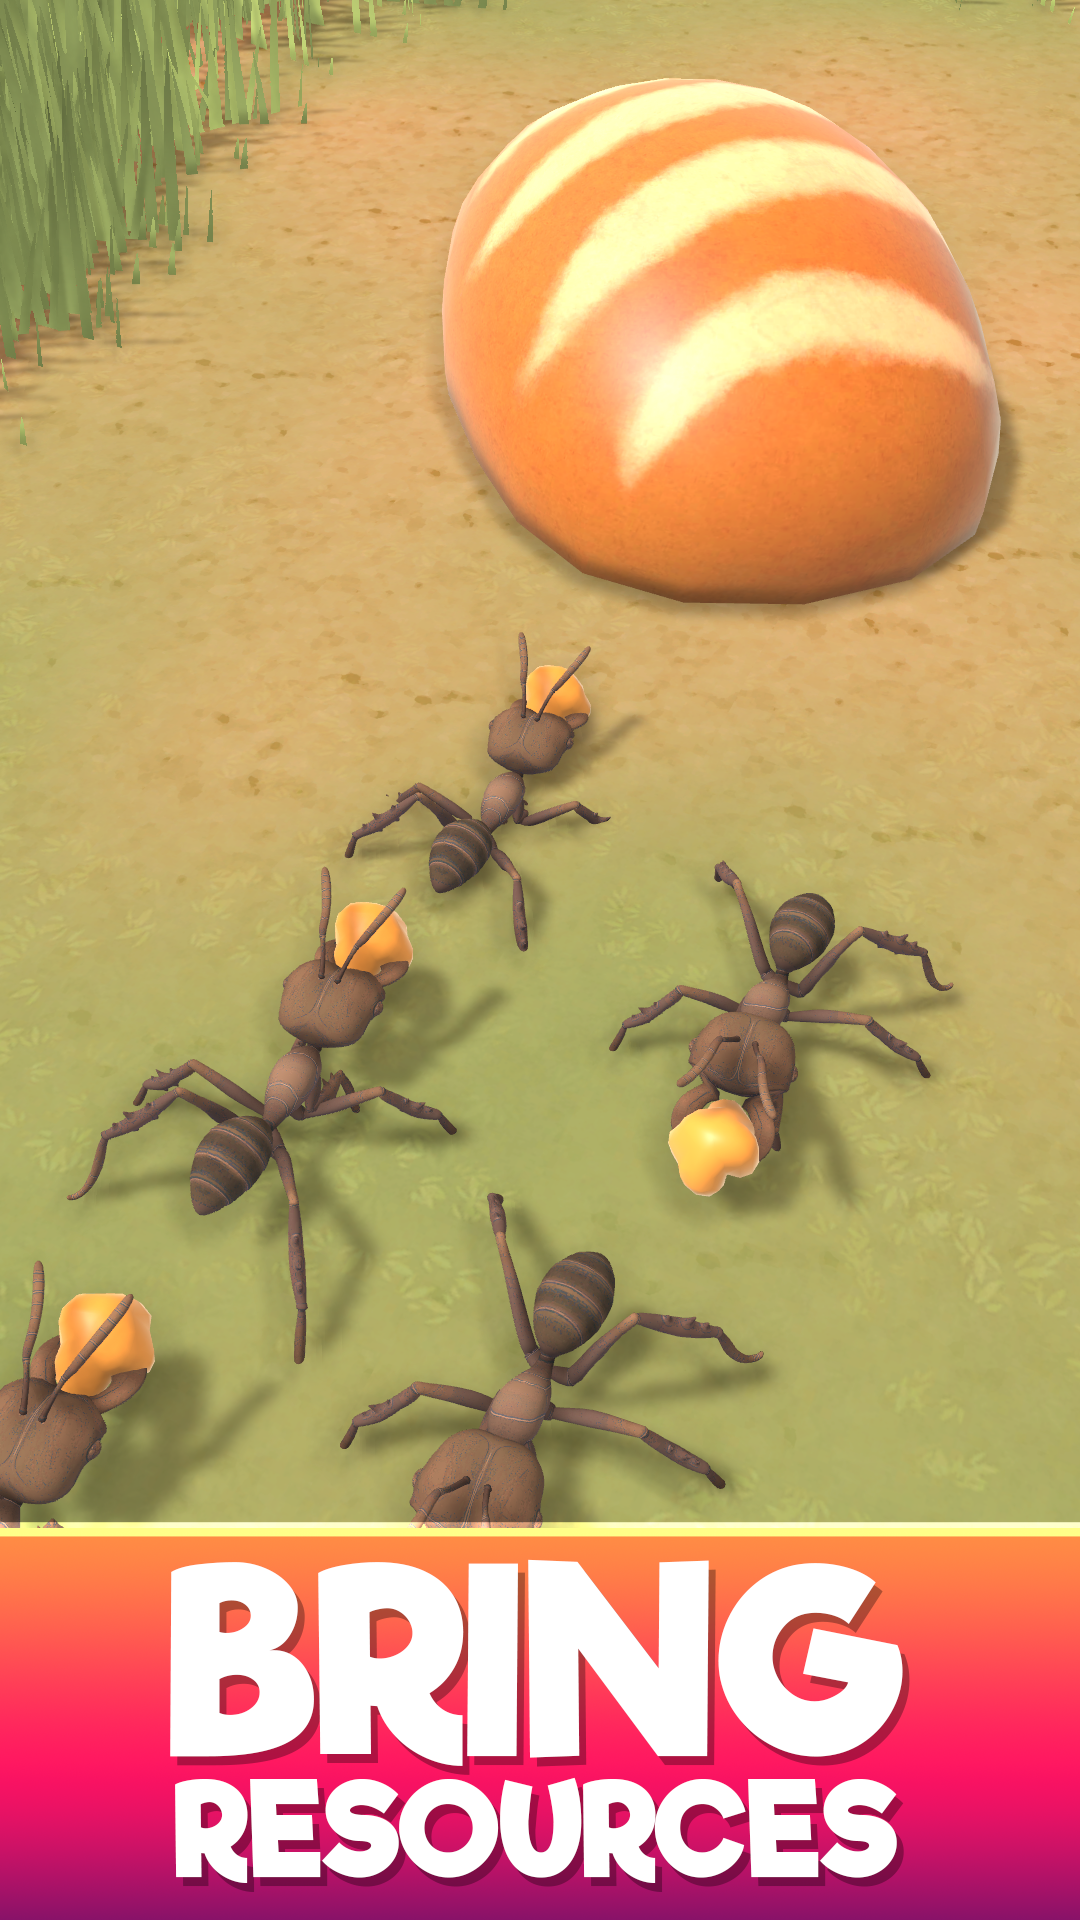 Ant Colony Adventureのキャプチャ